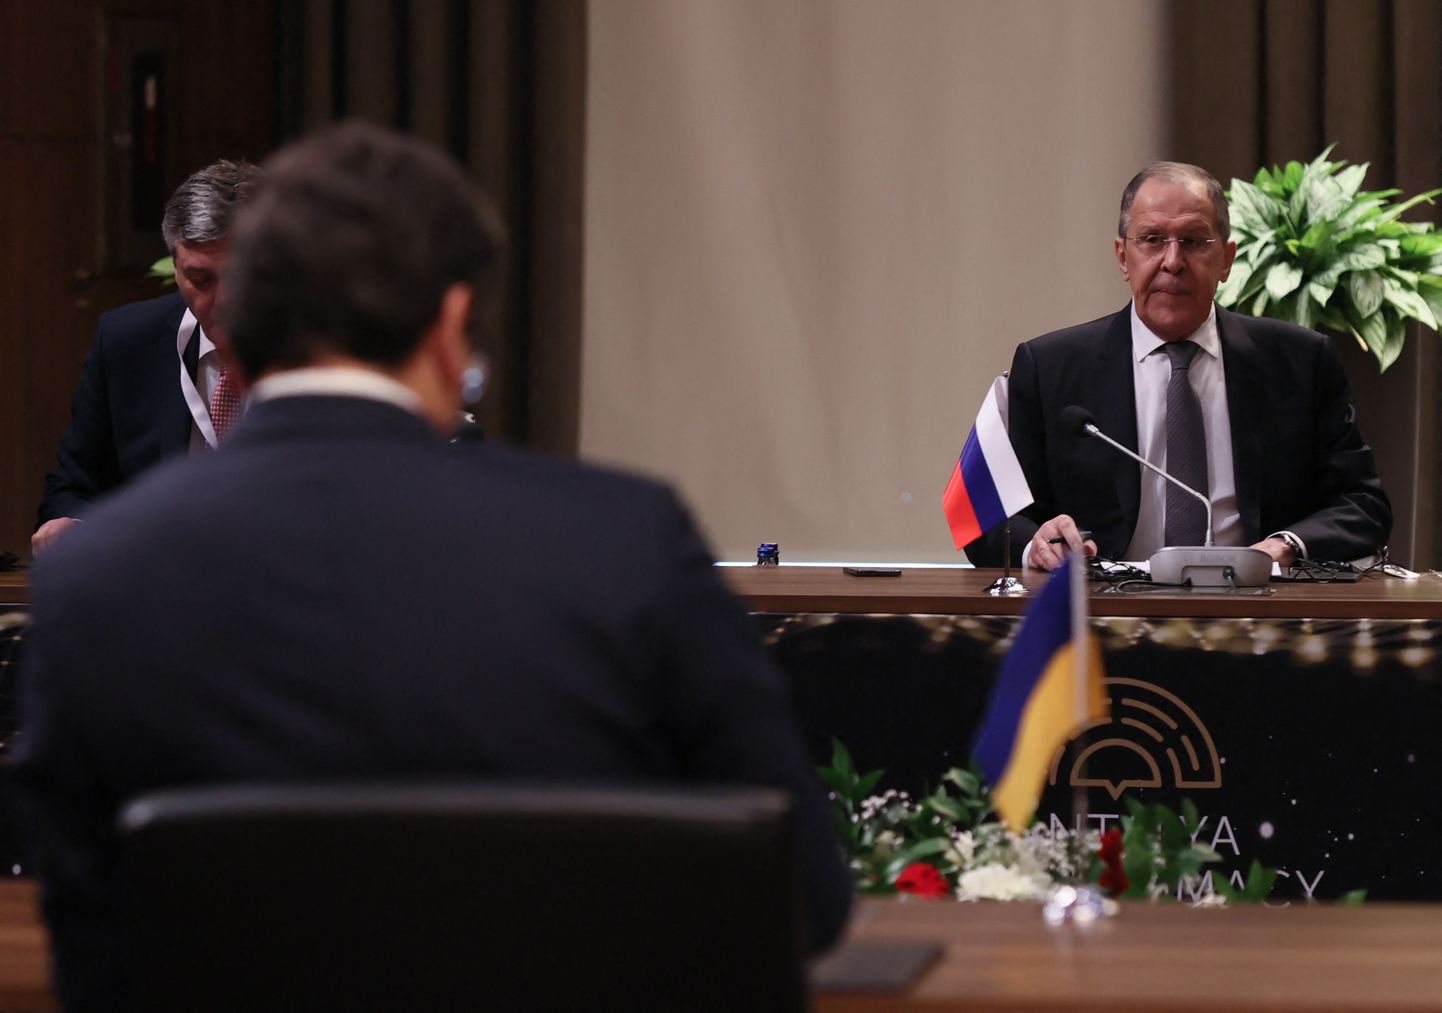 Venemaa välisminister Sergei Lavrov ja Ukraina välisminister Dmõtro Kuleba (seljaga) on kohtunud peale sõja algust 10. märtsil 2022 Antalyas läbirääkimistel. Arusaadavalt ei olnud see meeldiv restoraniskäik.